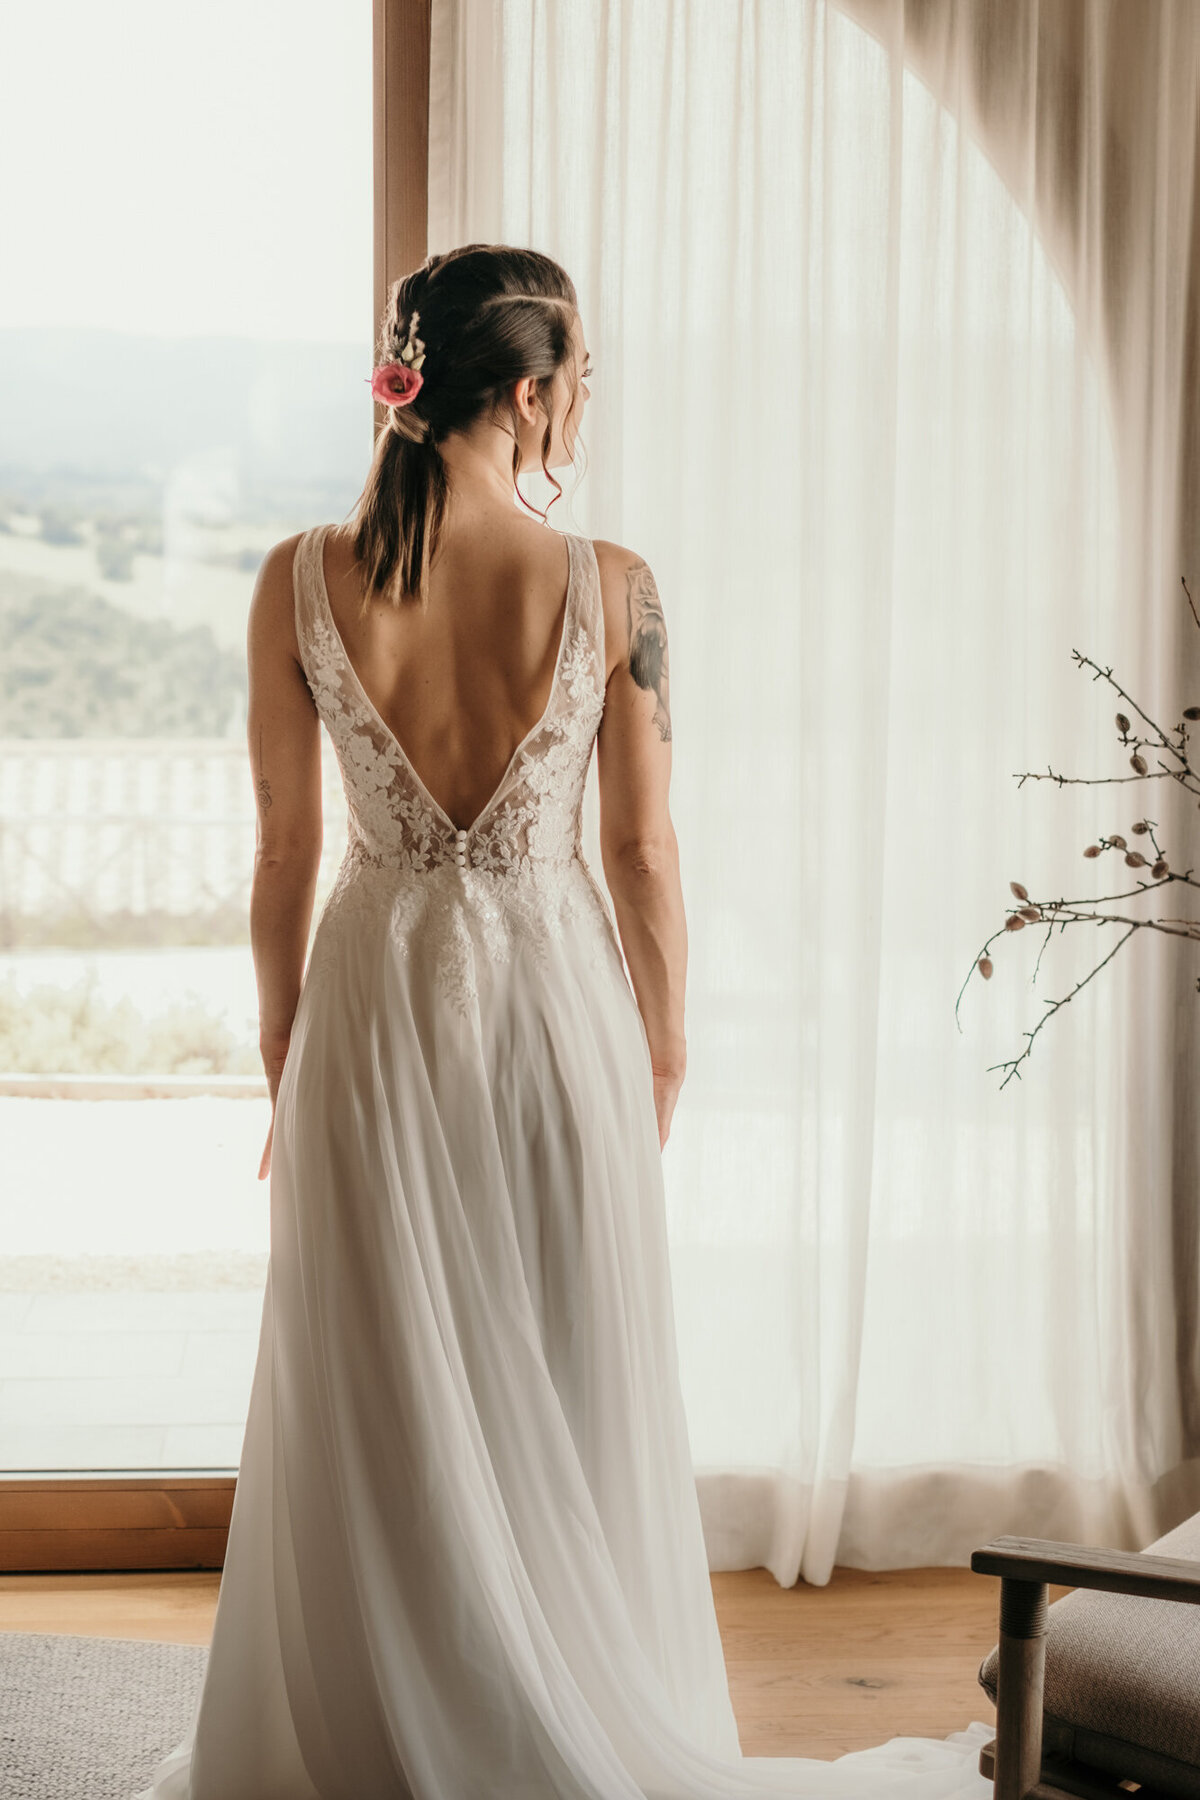 Fertig gestylt steht die Braut in Richtung Fenster blickend mit dem Rücken zur Kamera.